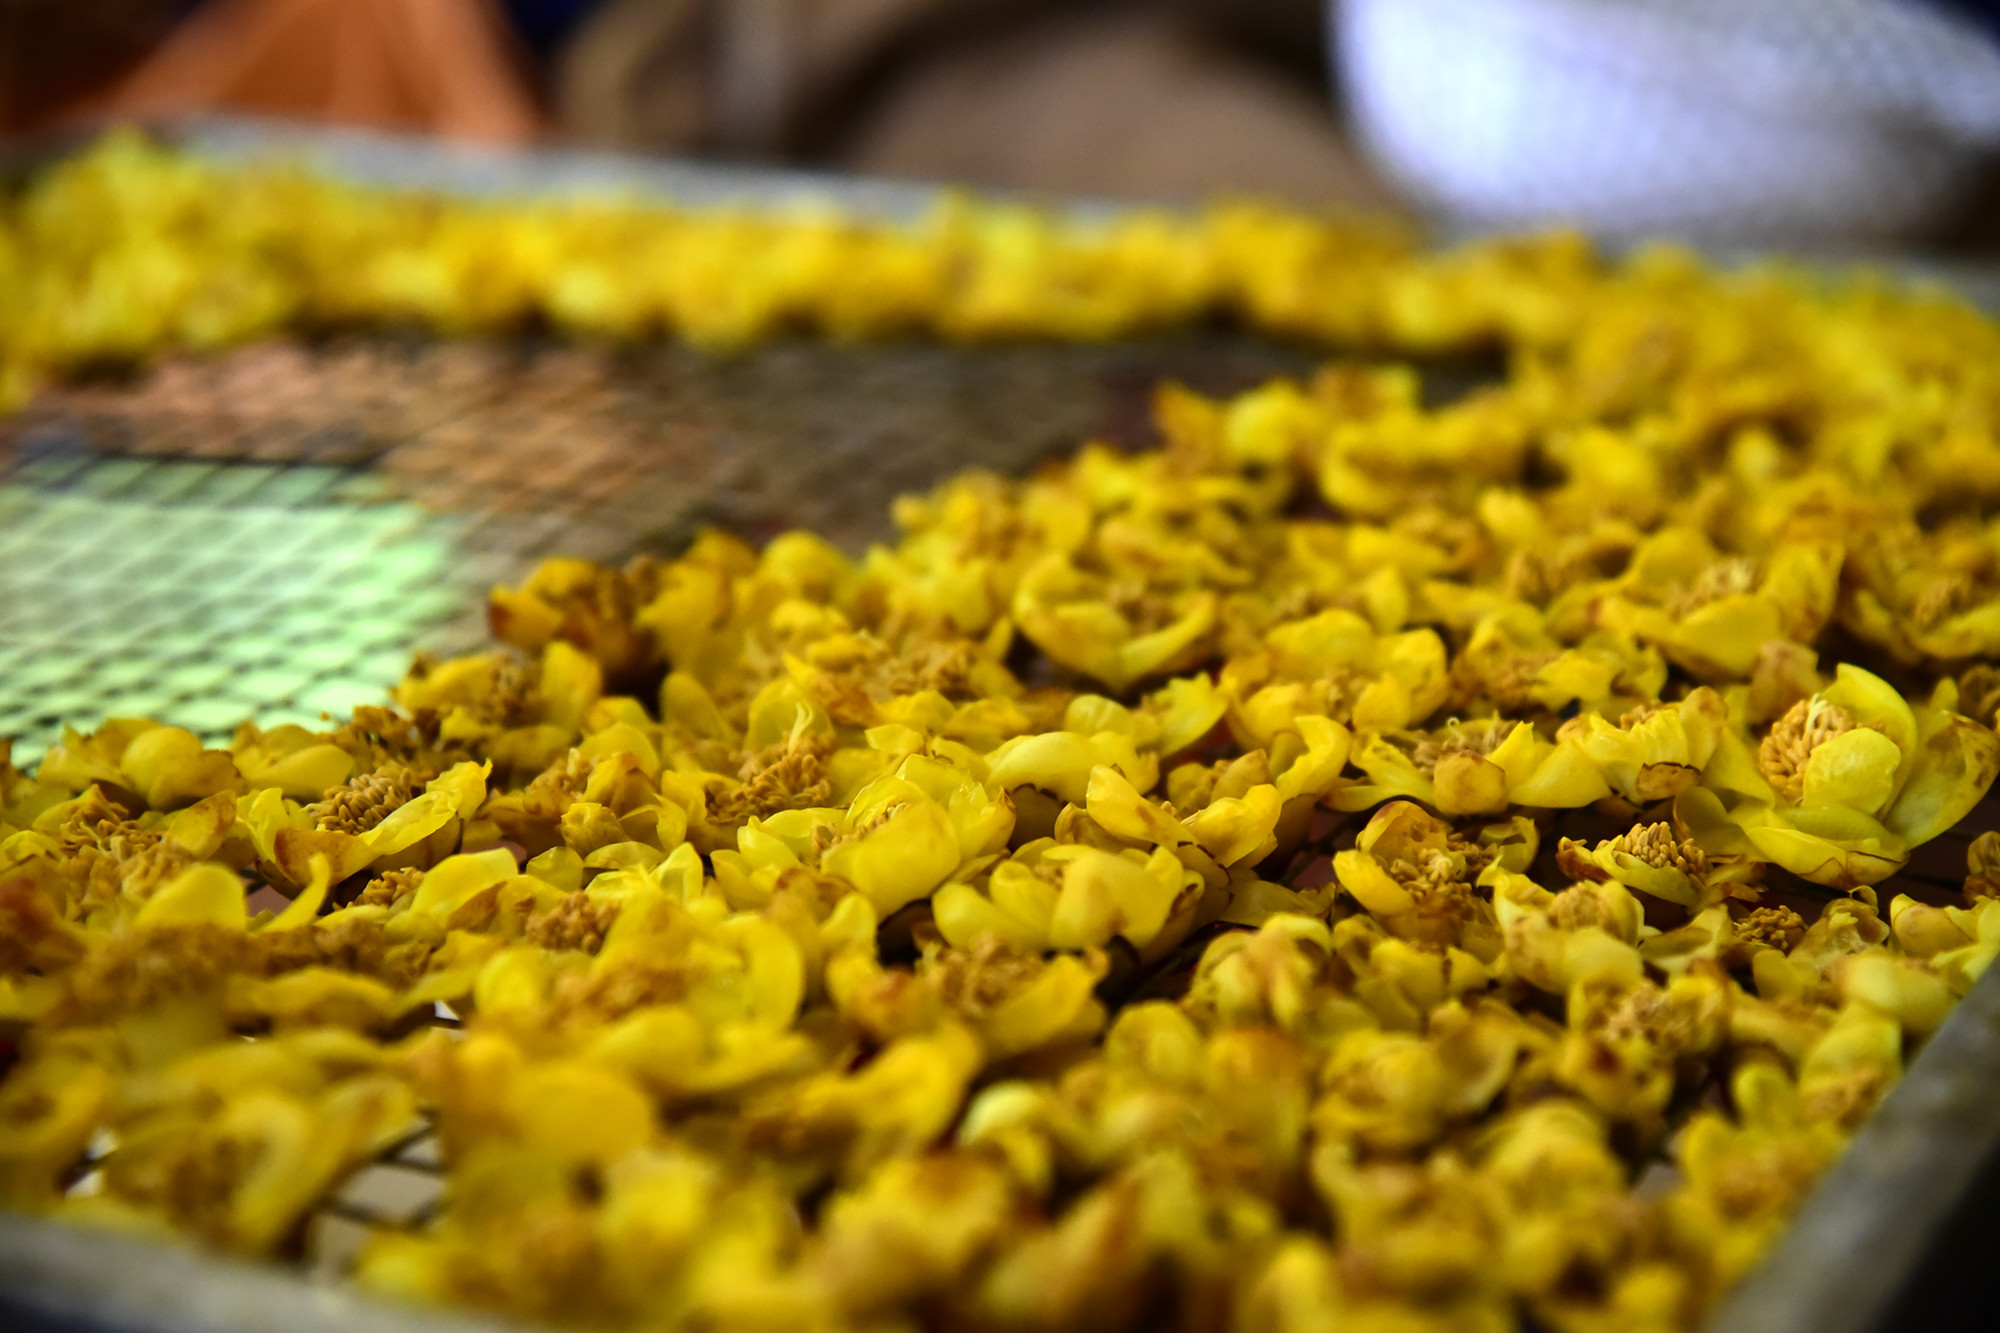 Chè hoa vàng - một sản vật quý của huyện Quế Phong. Ảnh: Lâm Tùng